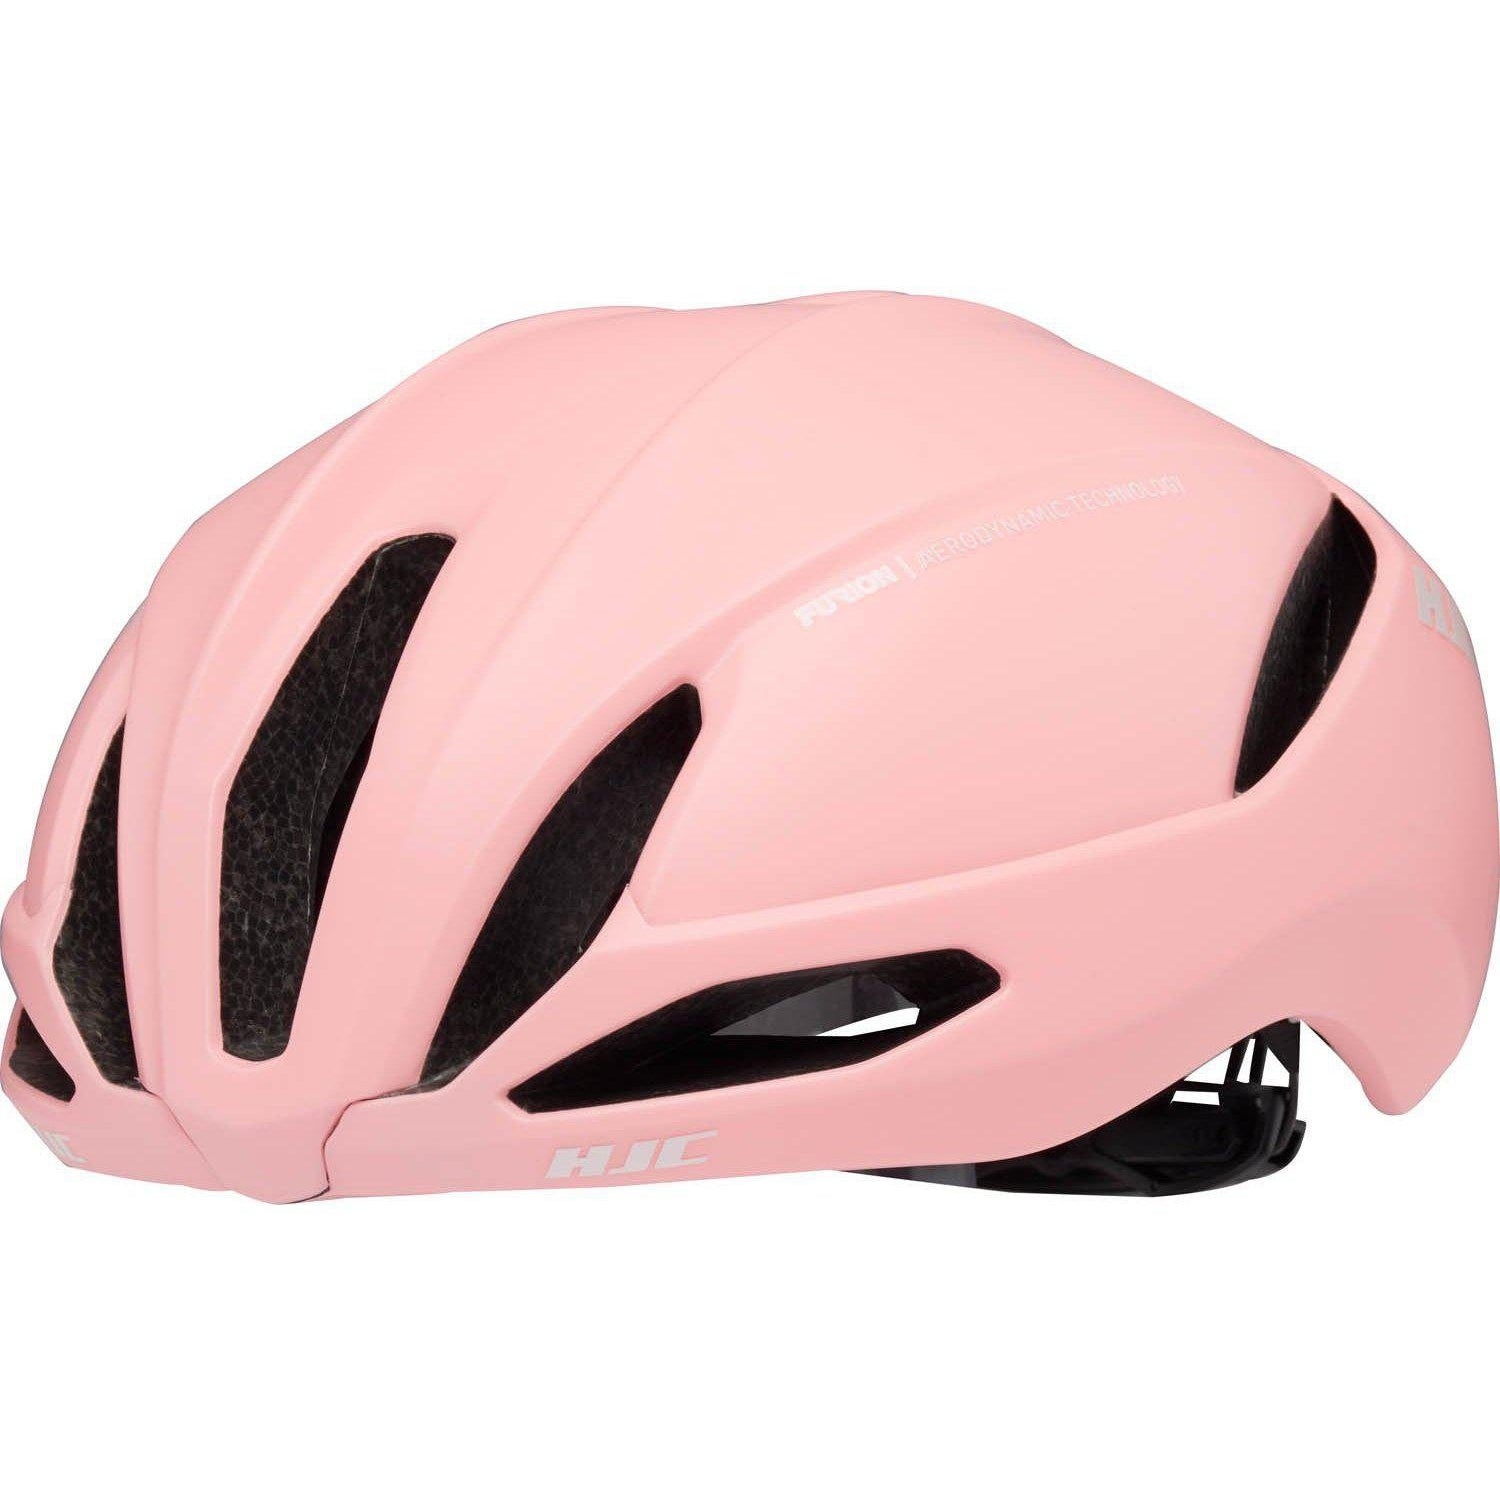 pink road bike helmet